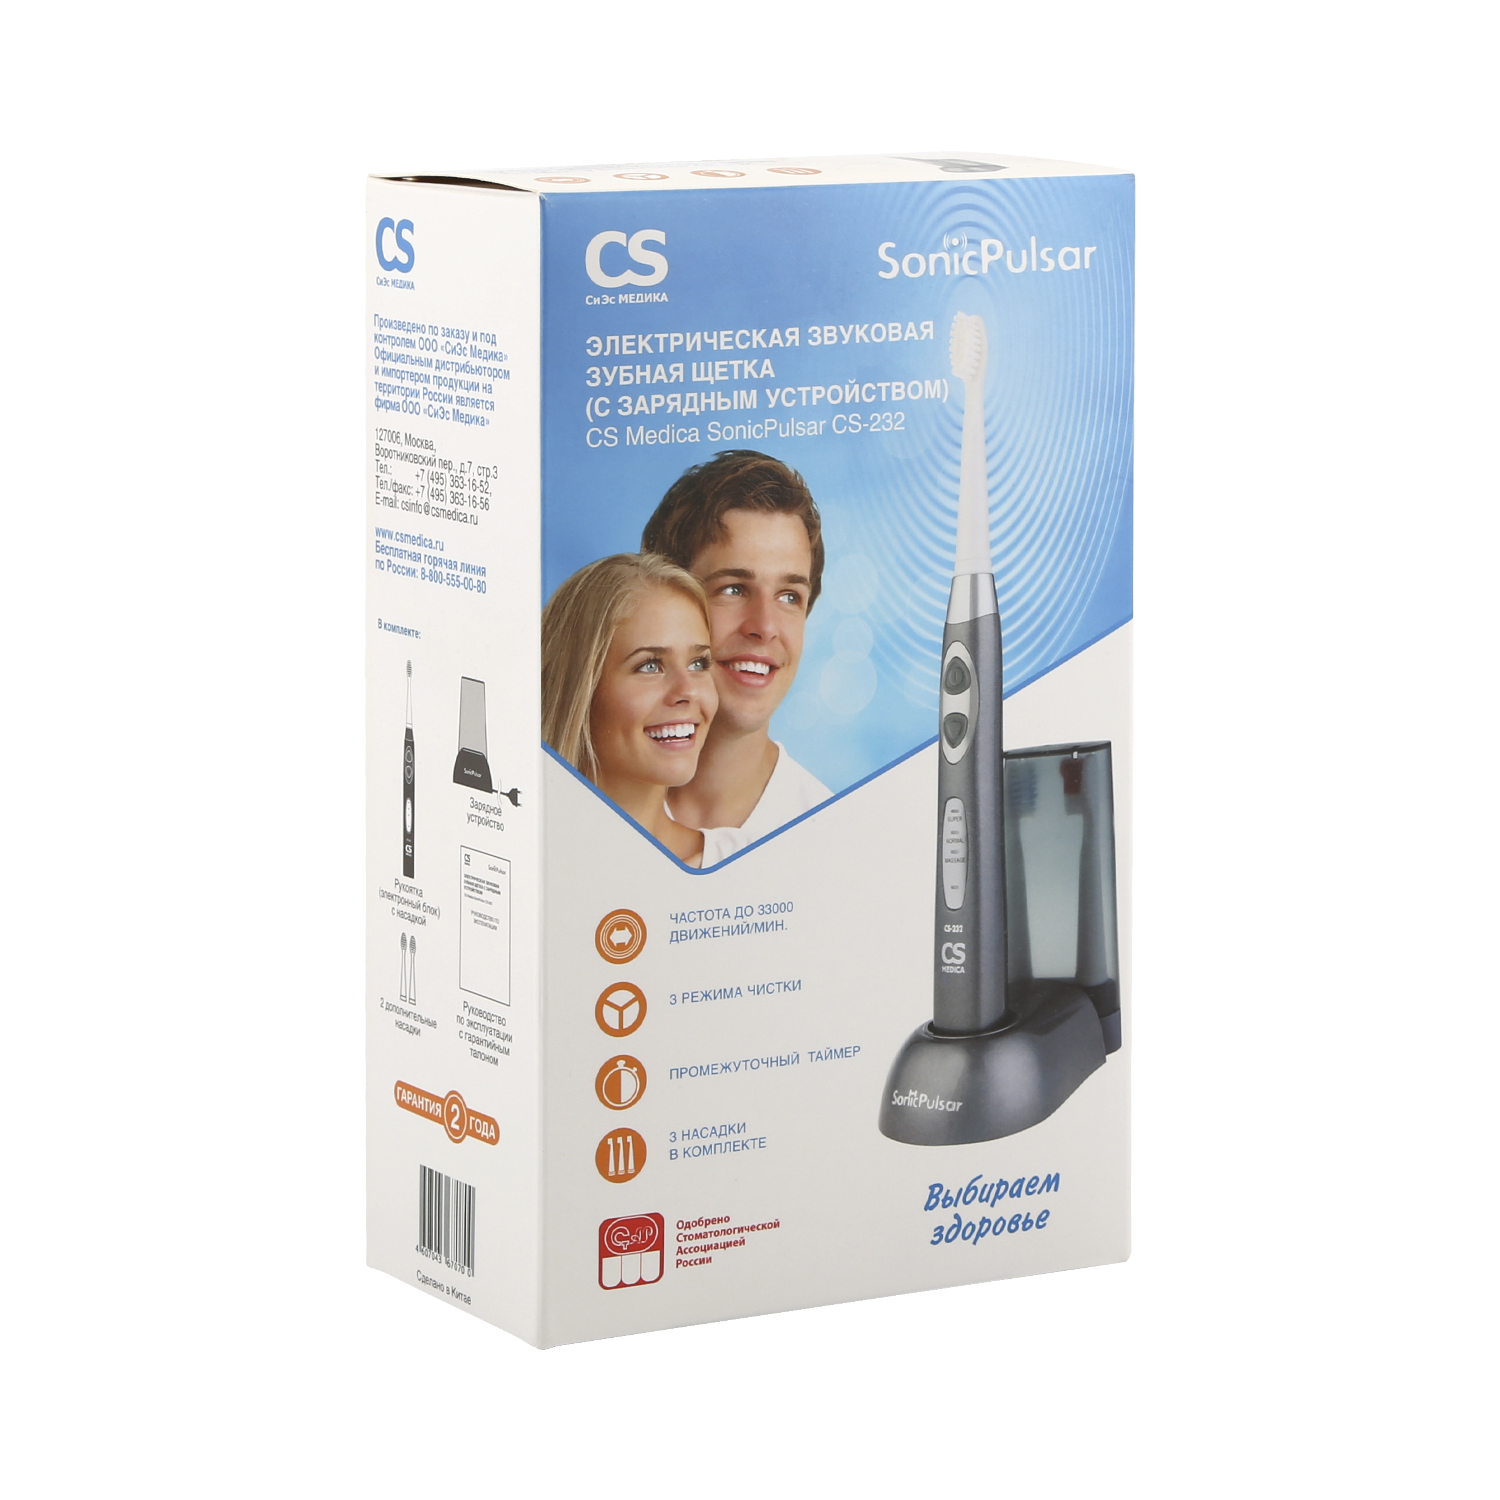 Купить СиЭс Медика щетка зубная СоникПульсар электрическая звуковая CS-232, CS Medica